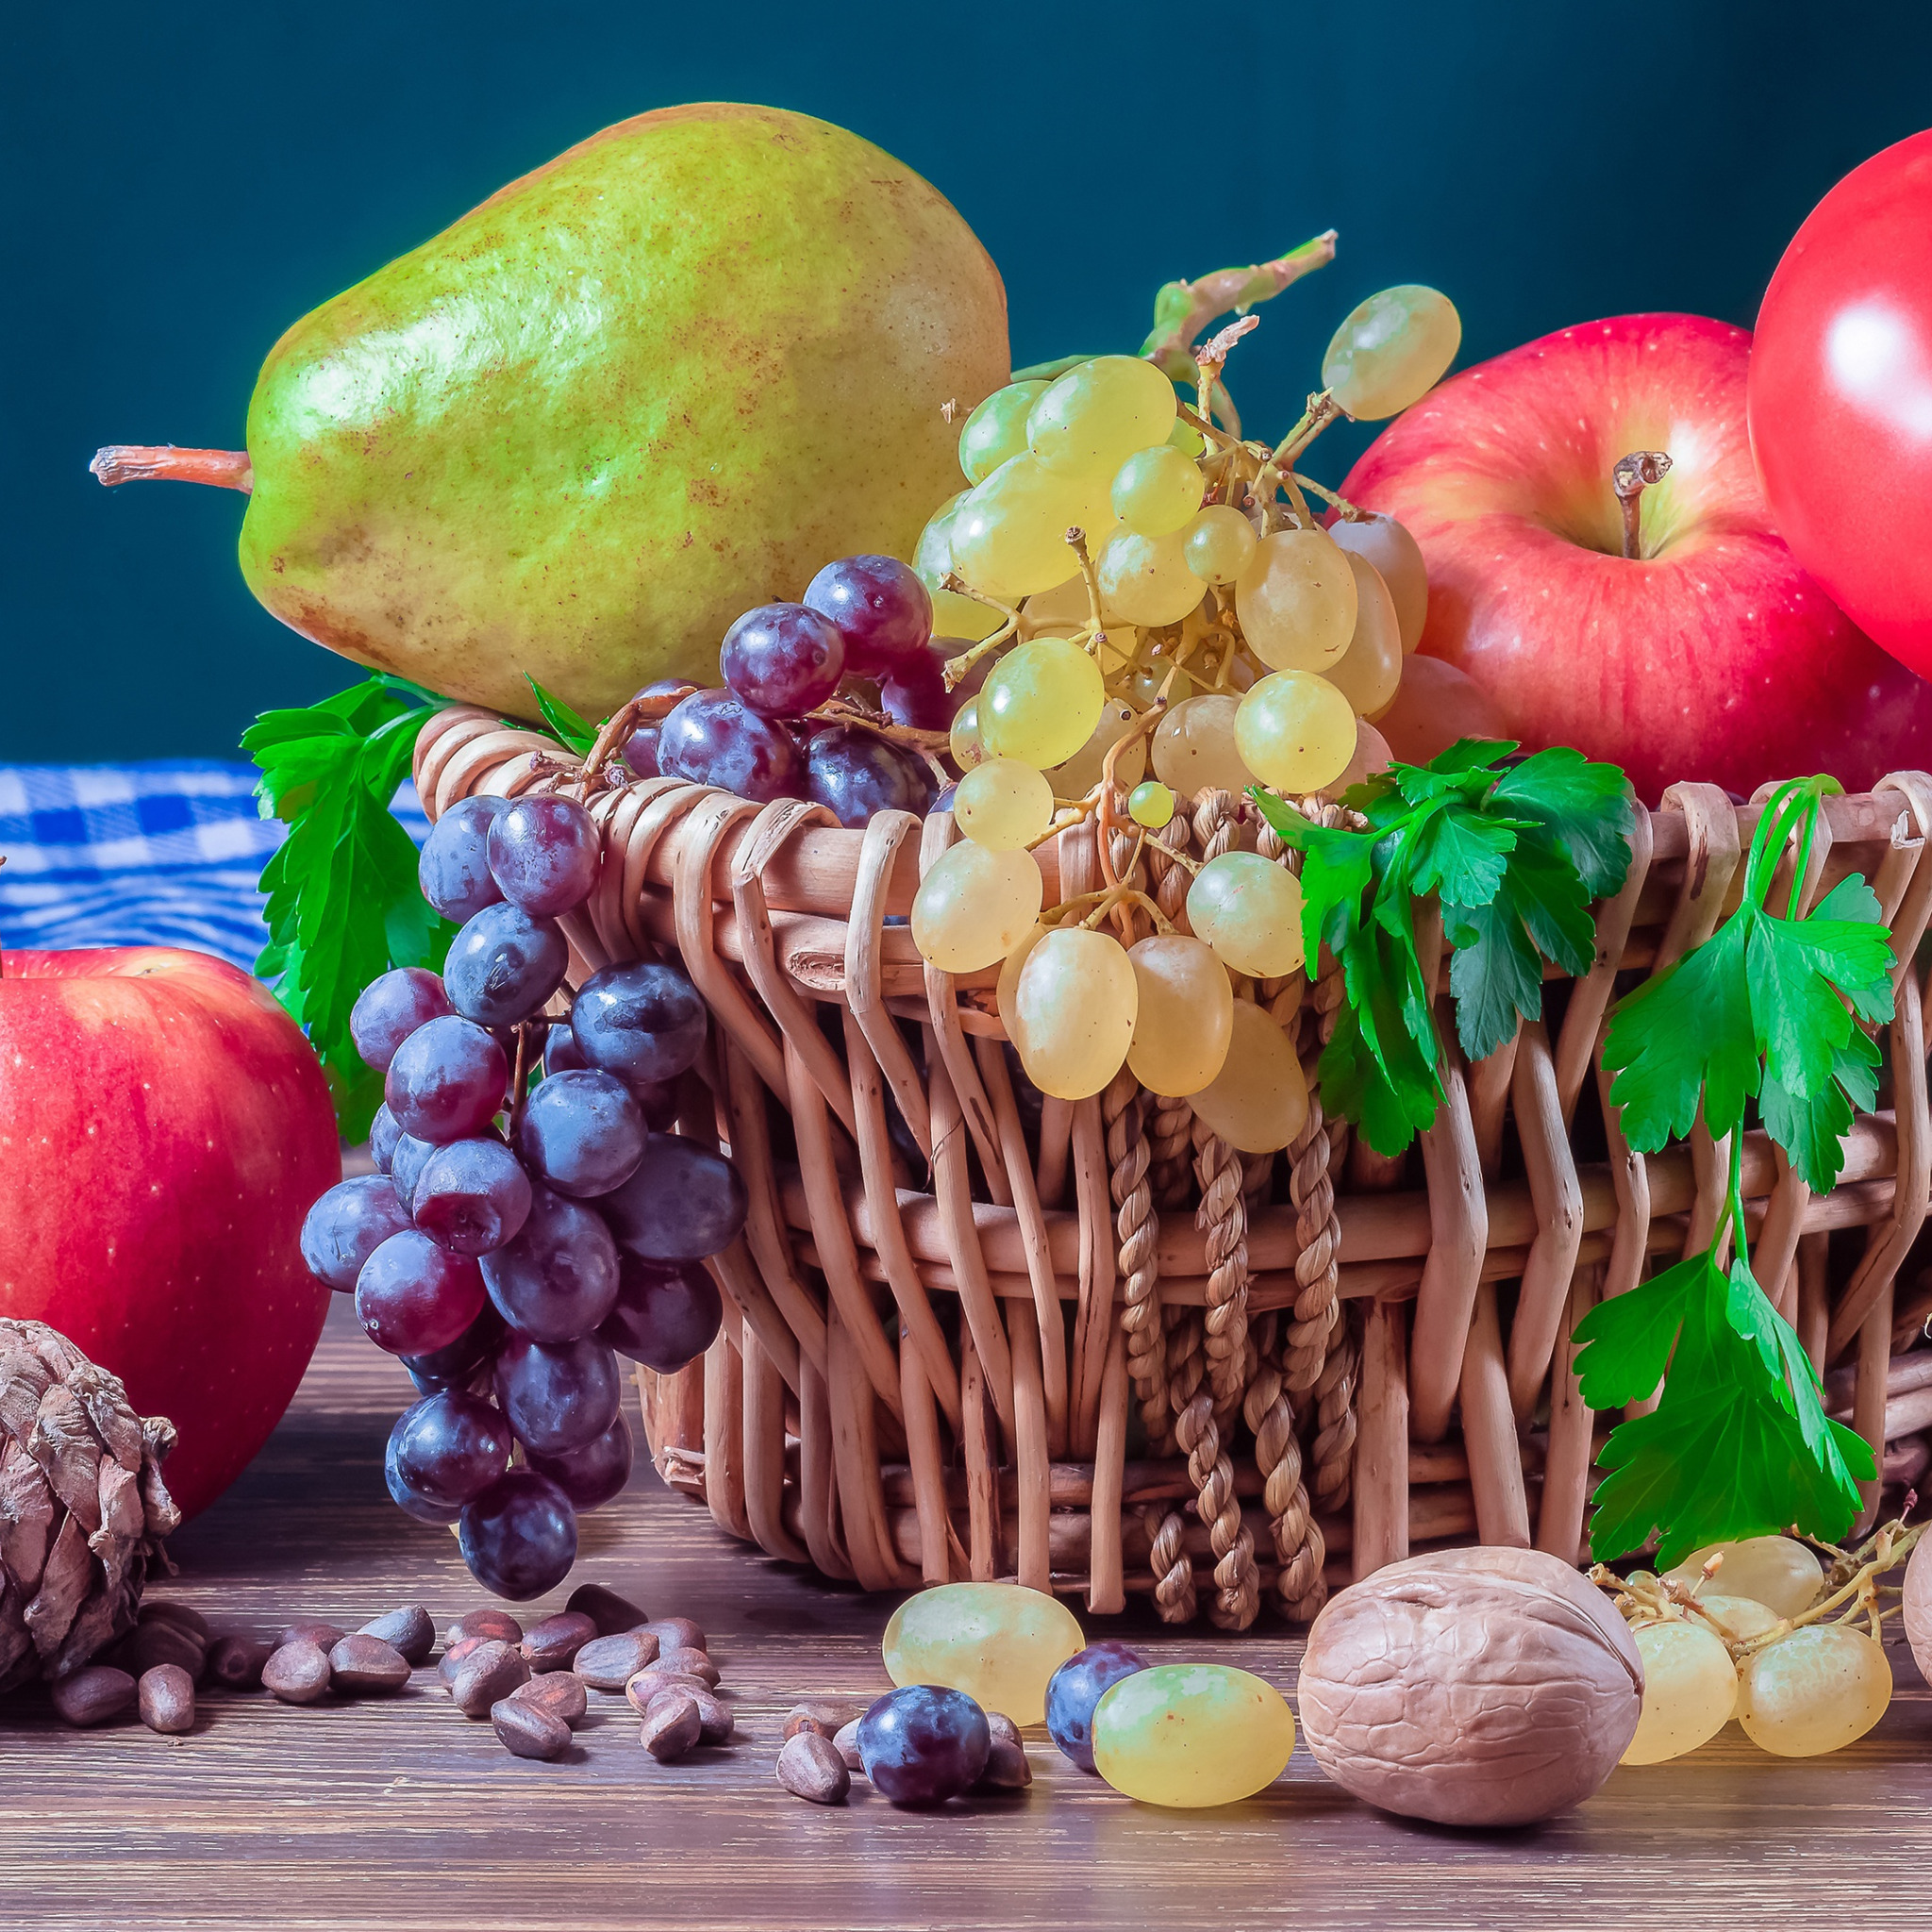 Натюрморт фрукты и овощи в корзине